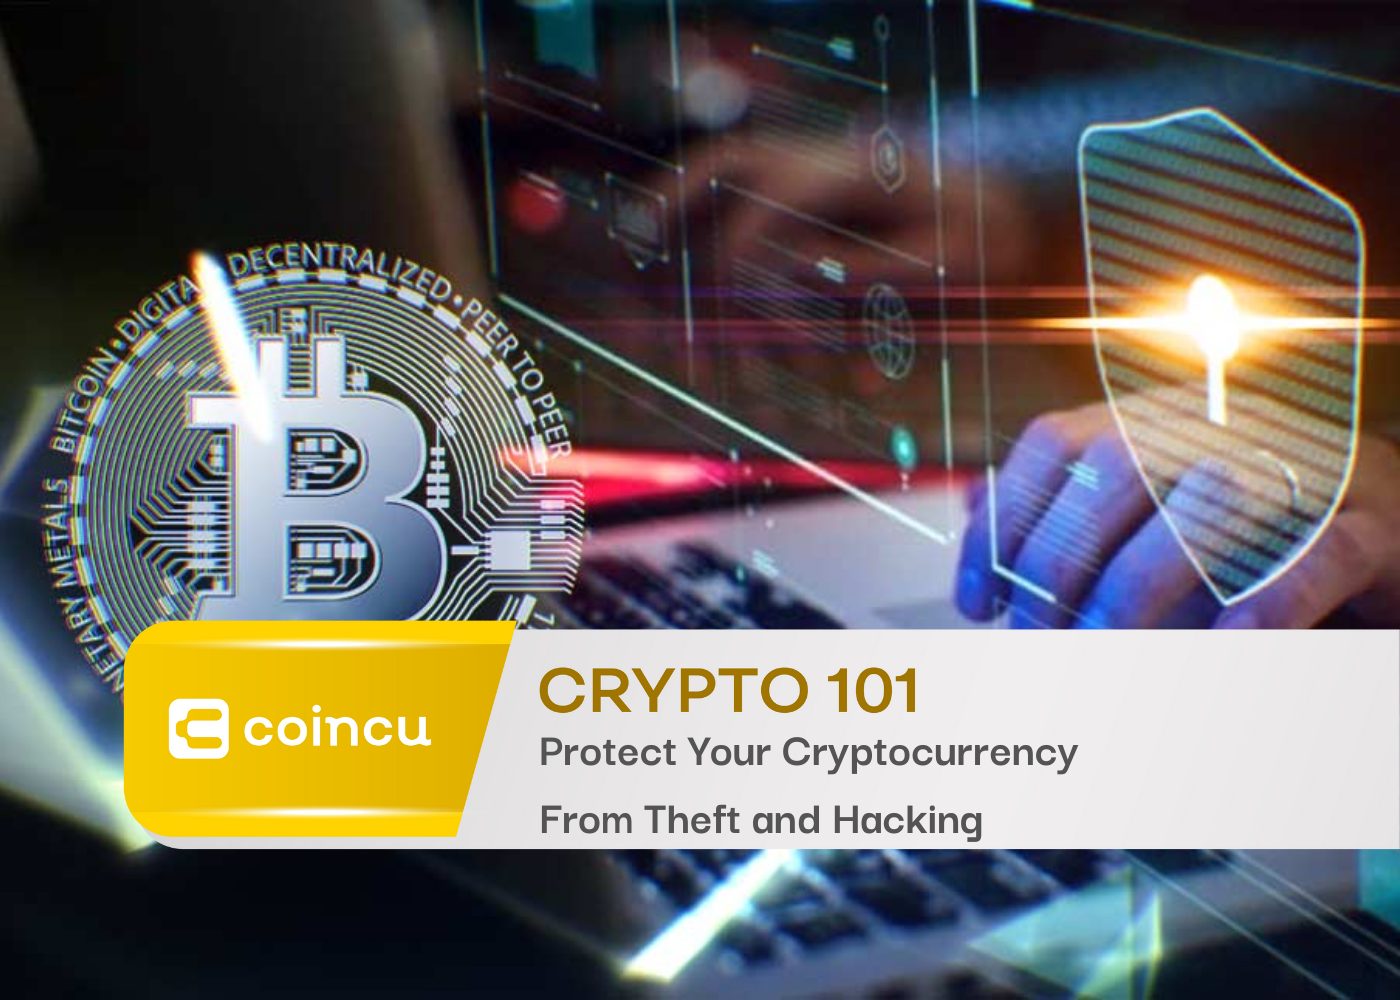 Protégez votre crypto-monnaie contre le vol et le piratage